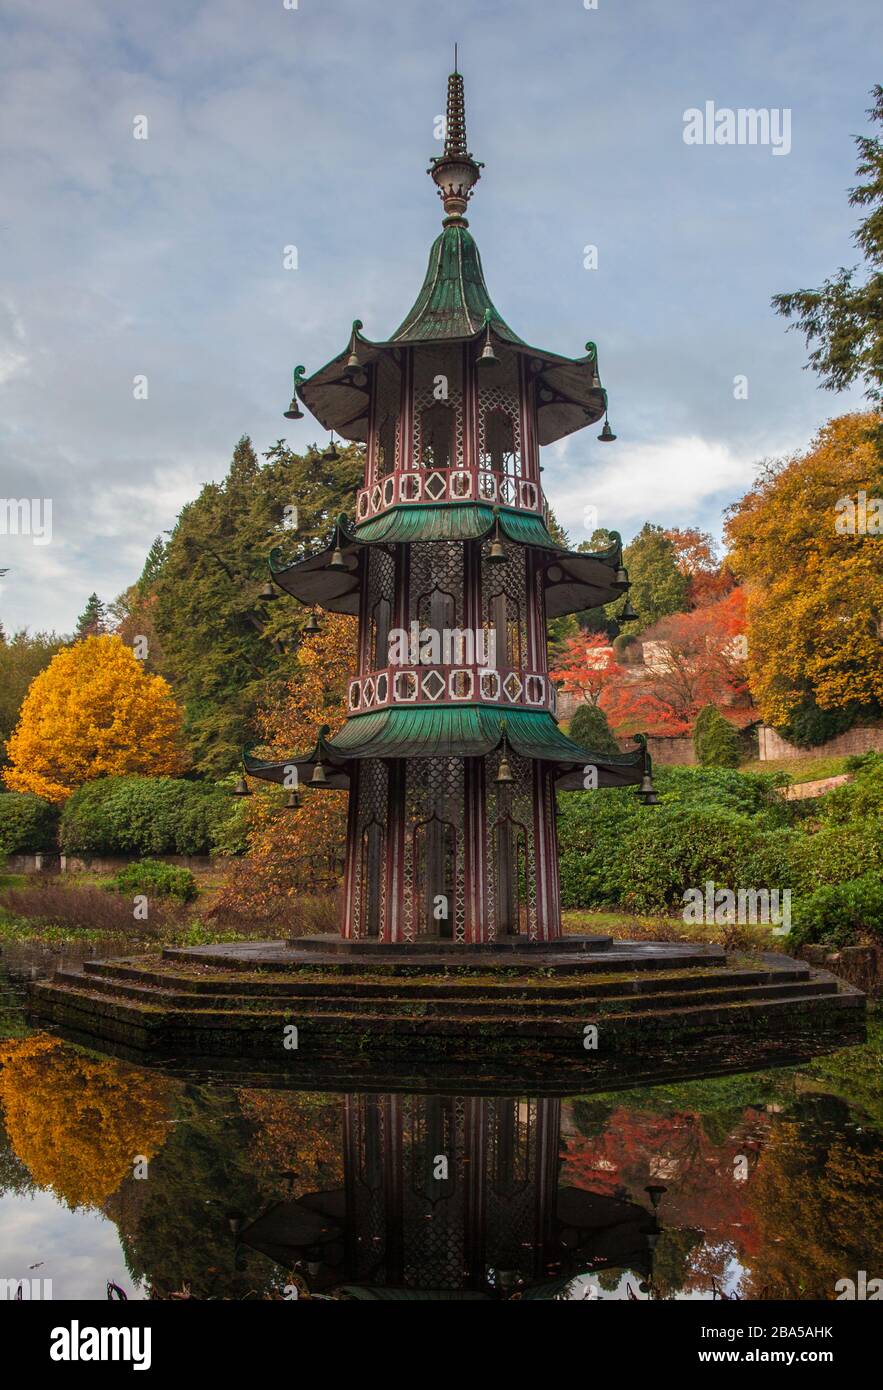 Pagoda nei colori autunnali, autunnali o autunnali. Alton Towers.Estate giardini, stagno, riflessioni, giardini pubblici Foto Stock